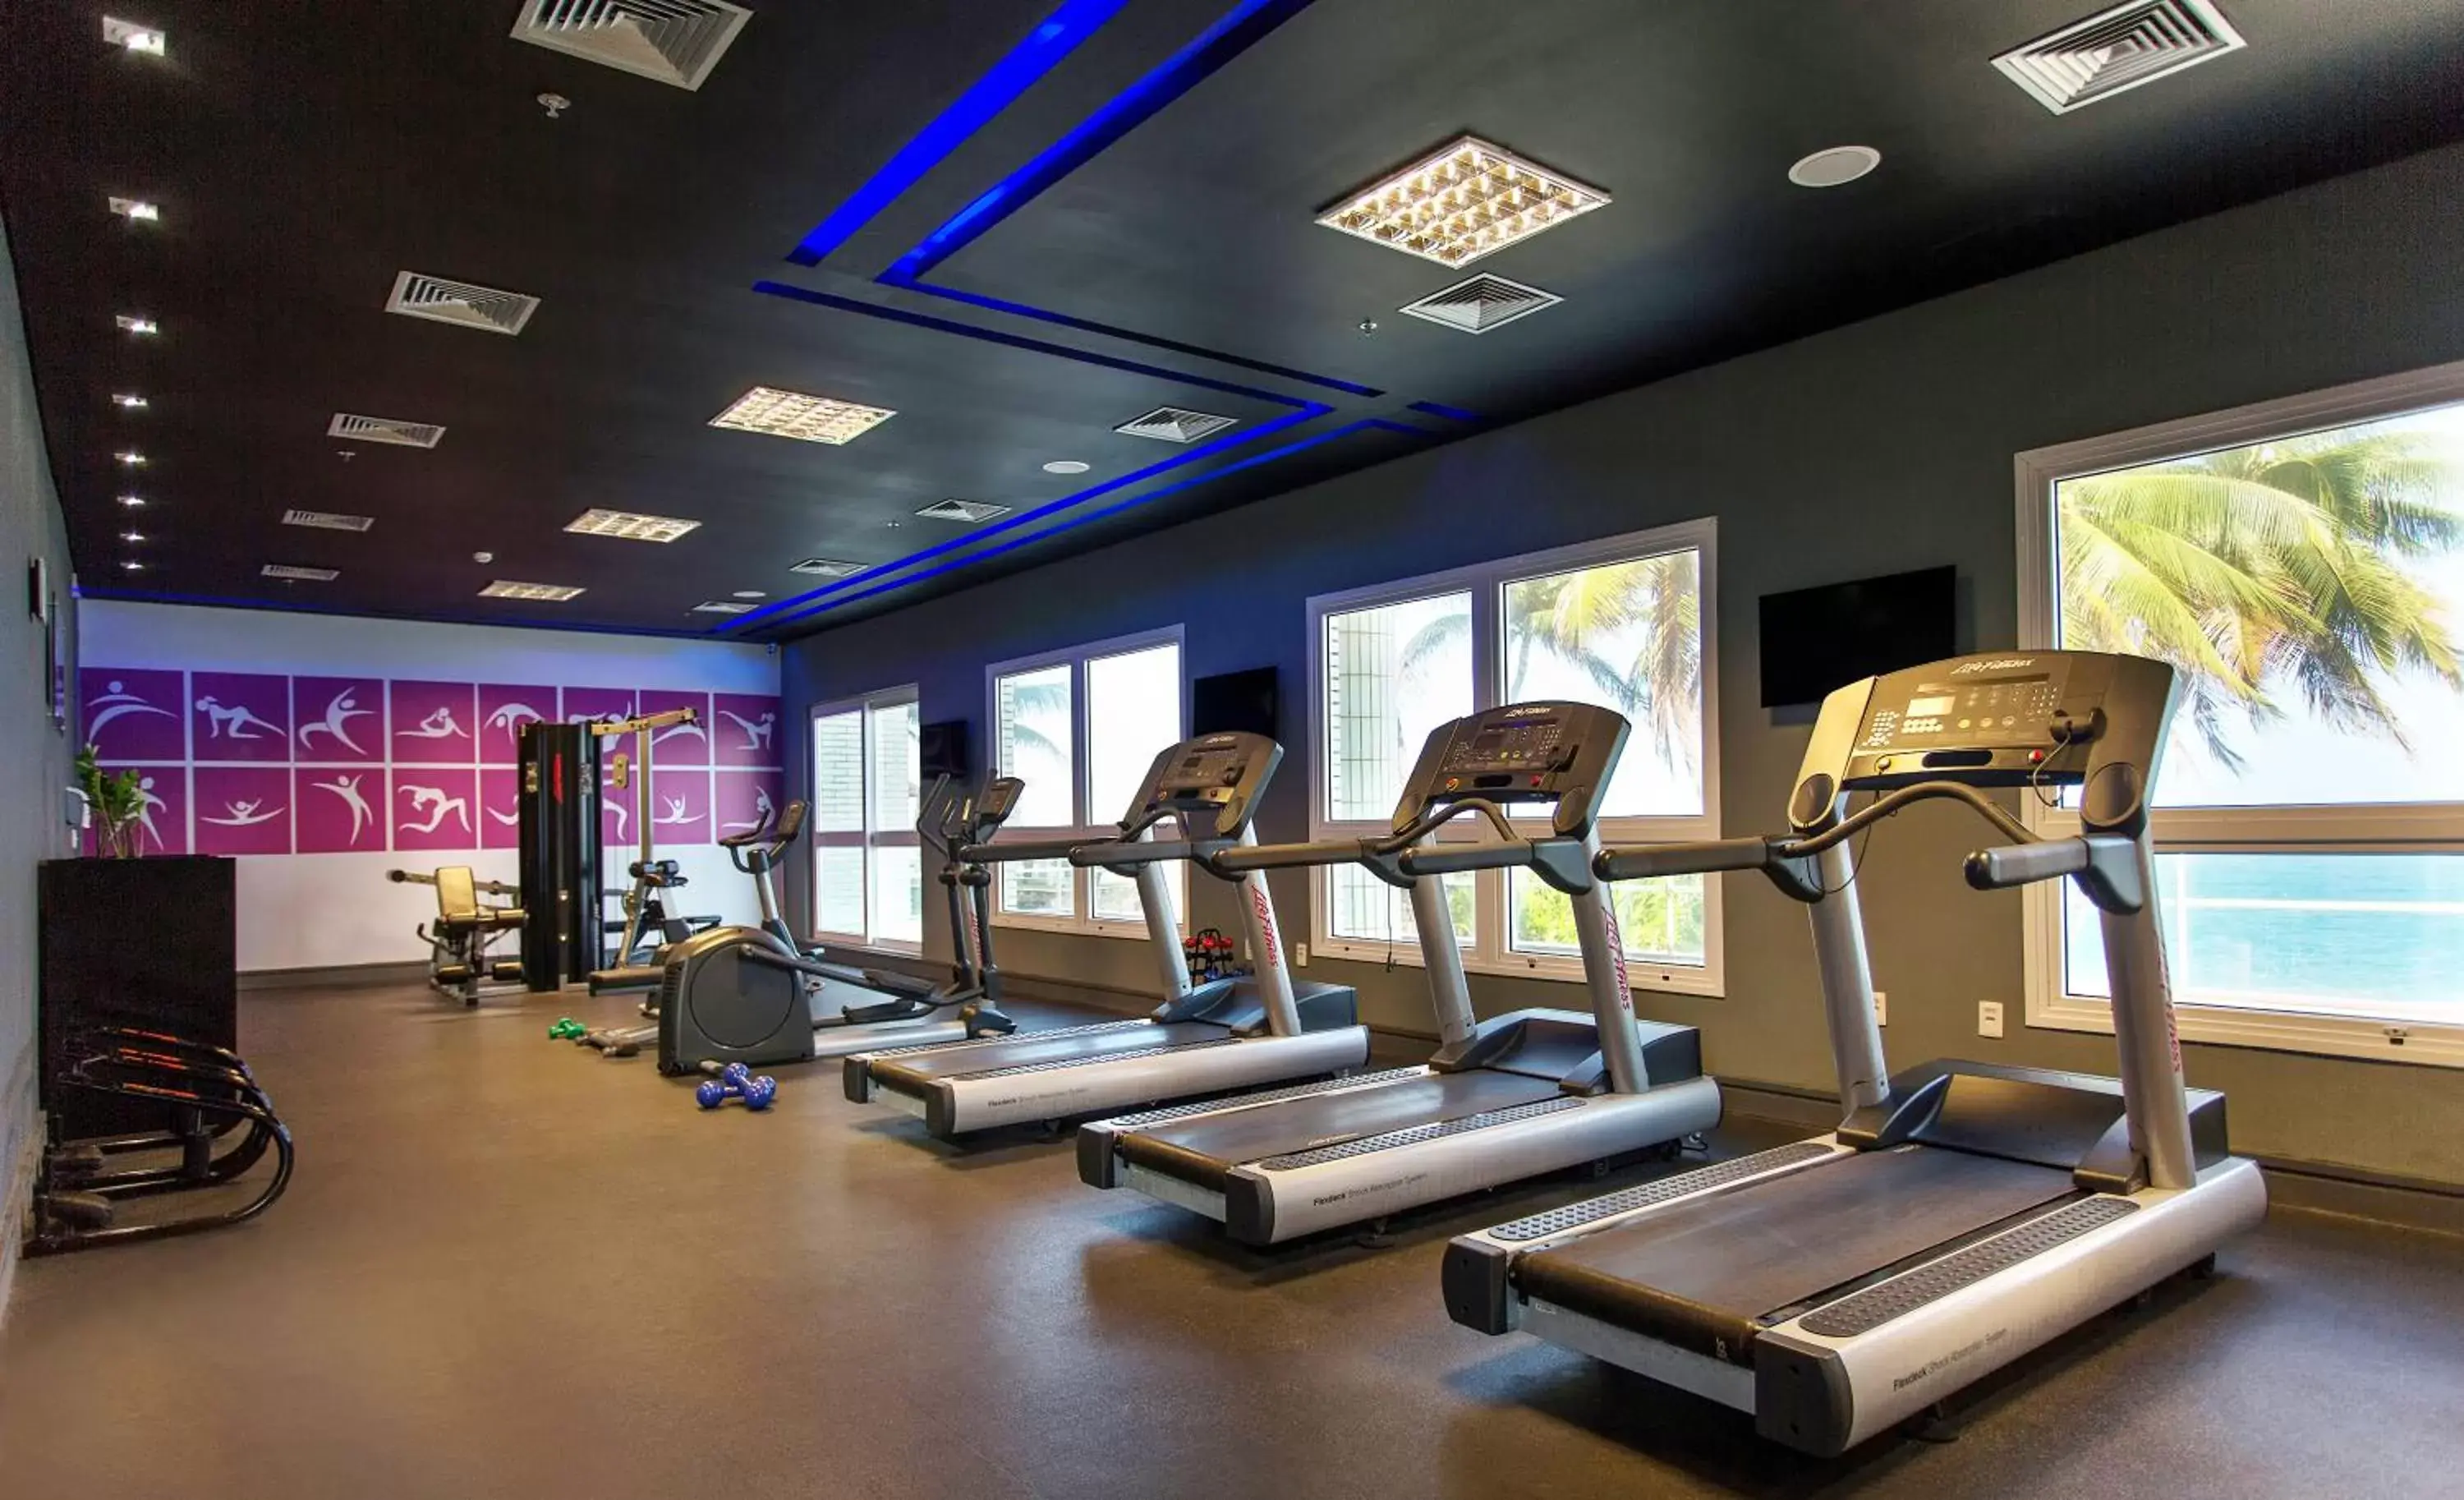 Fitness centre/facilities, Fitness Center/Facilities in Mercure Salvador Rio Vermelho